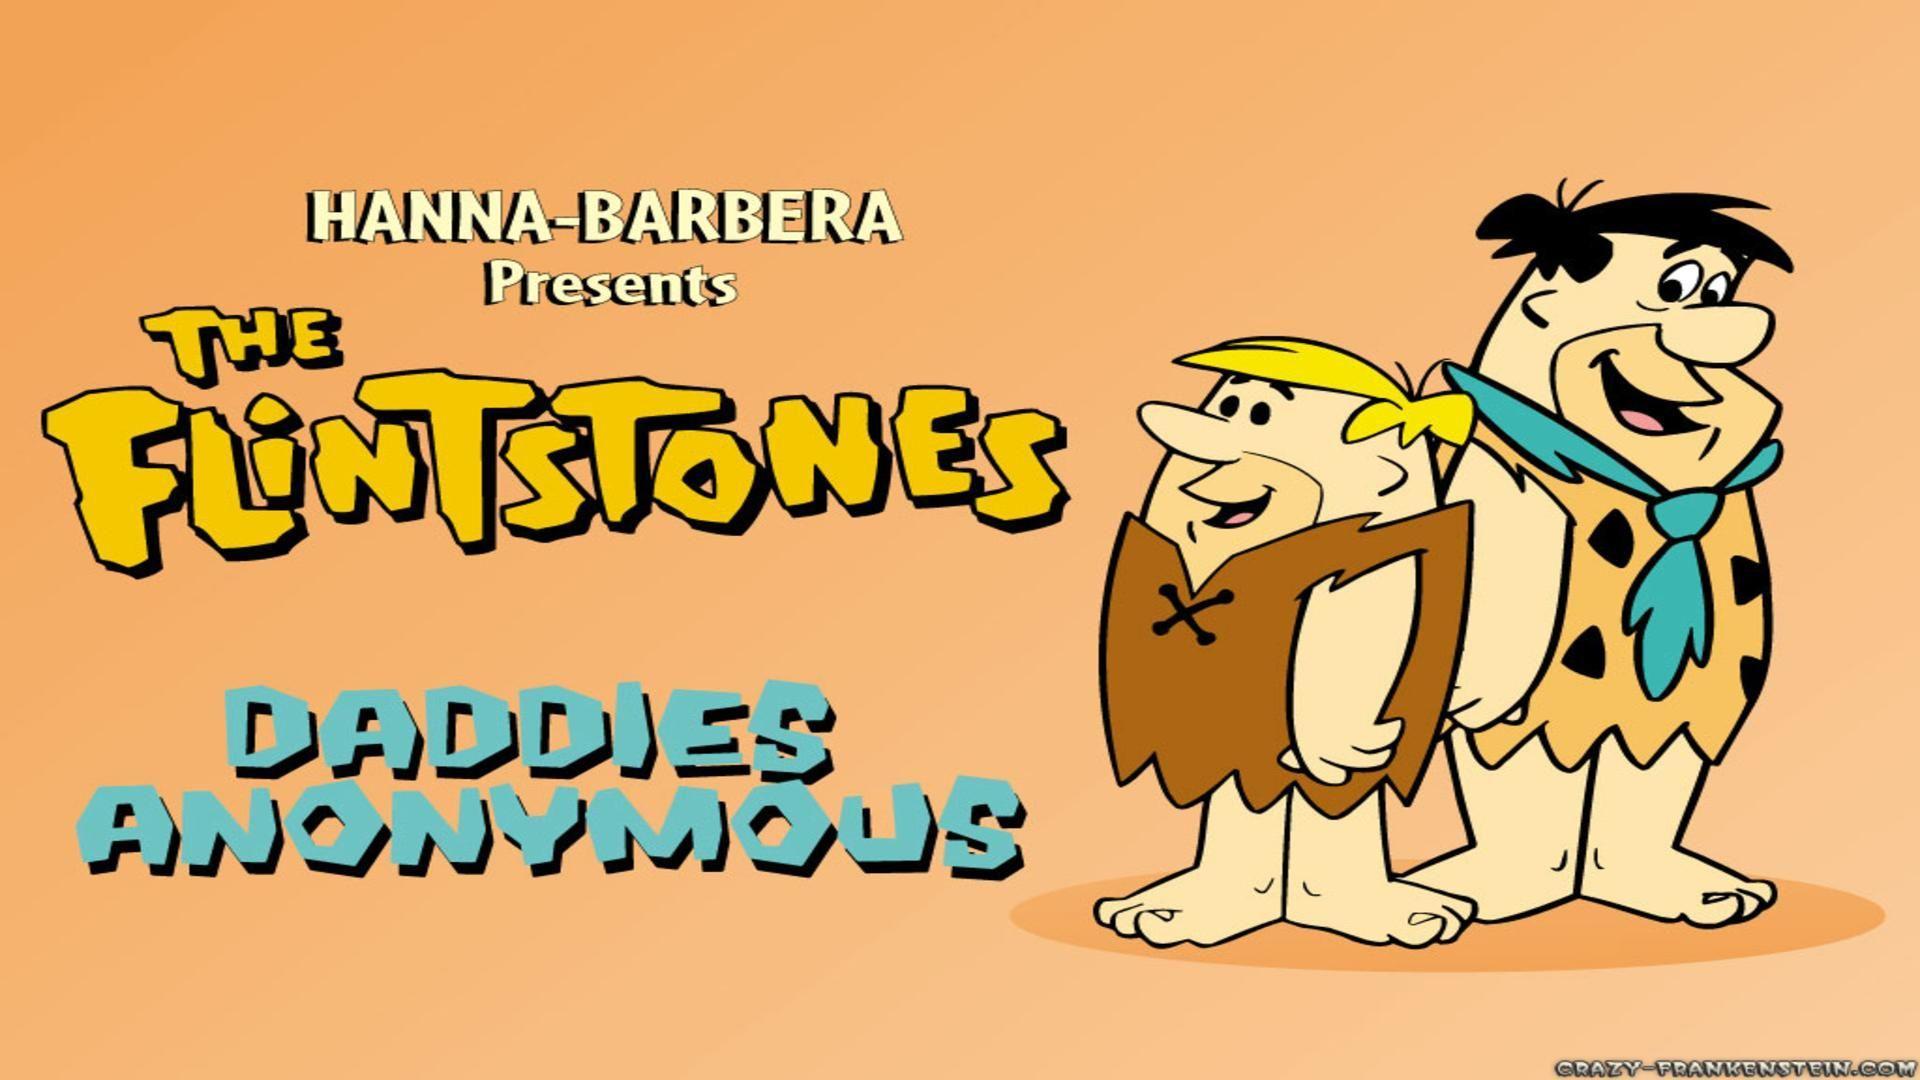 Flintstones cartoon poster free desktop background